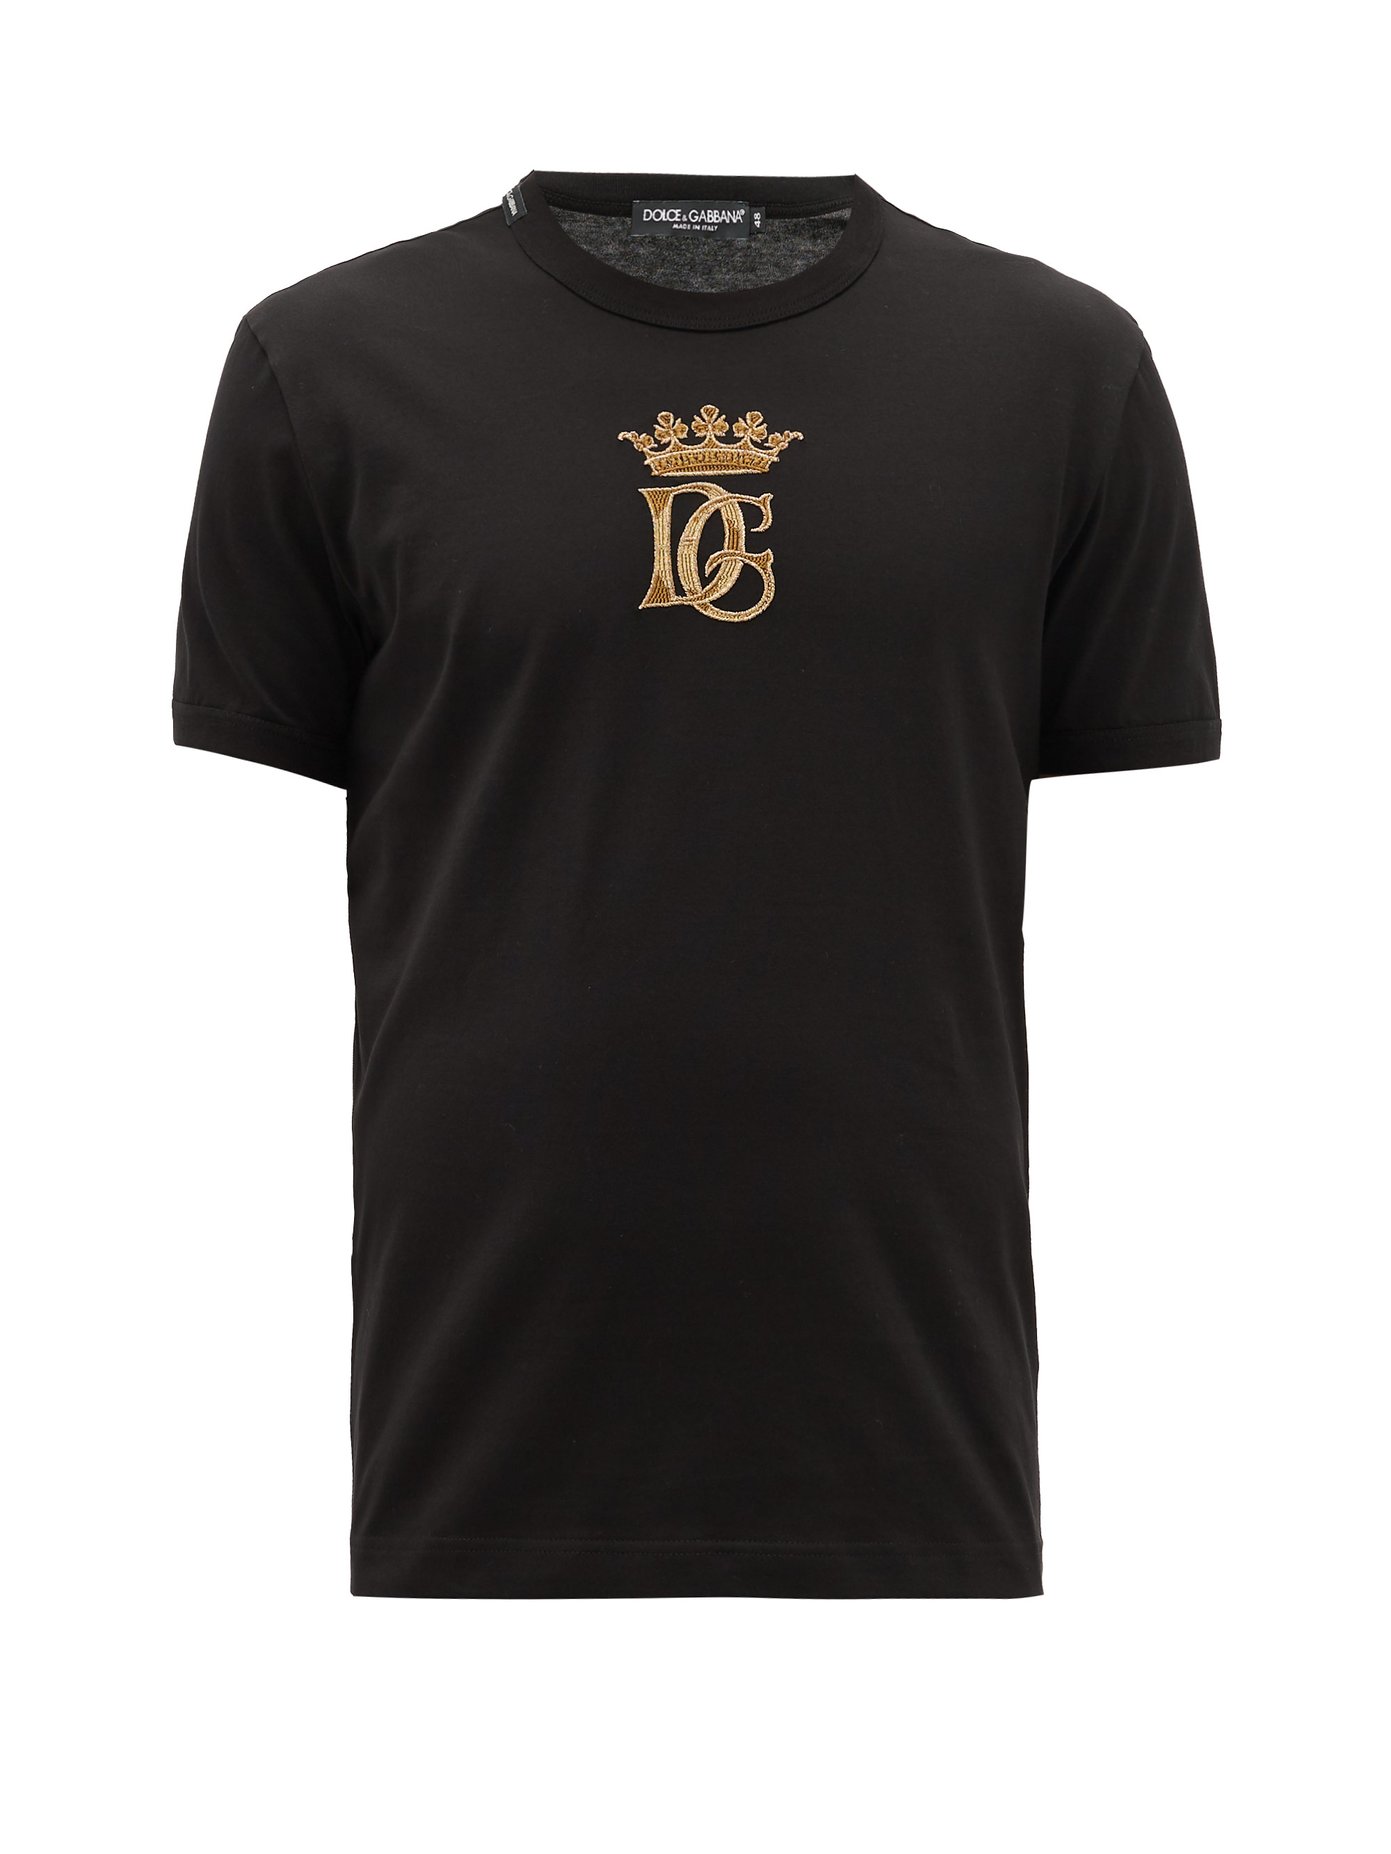 d&g crown t shirt